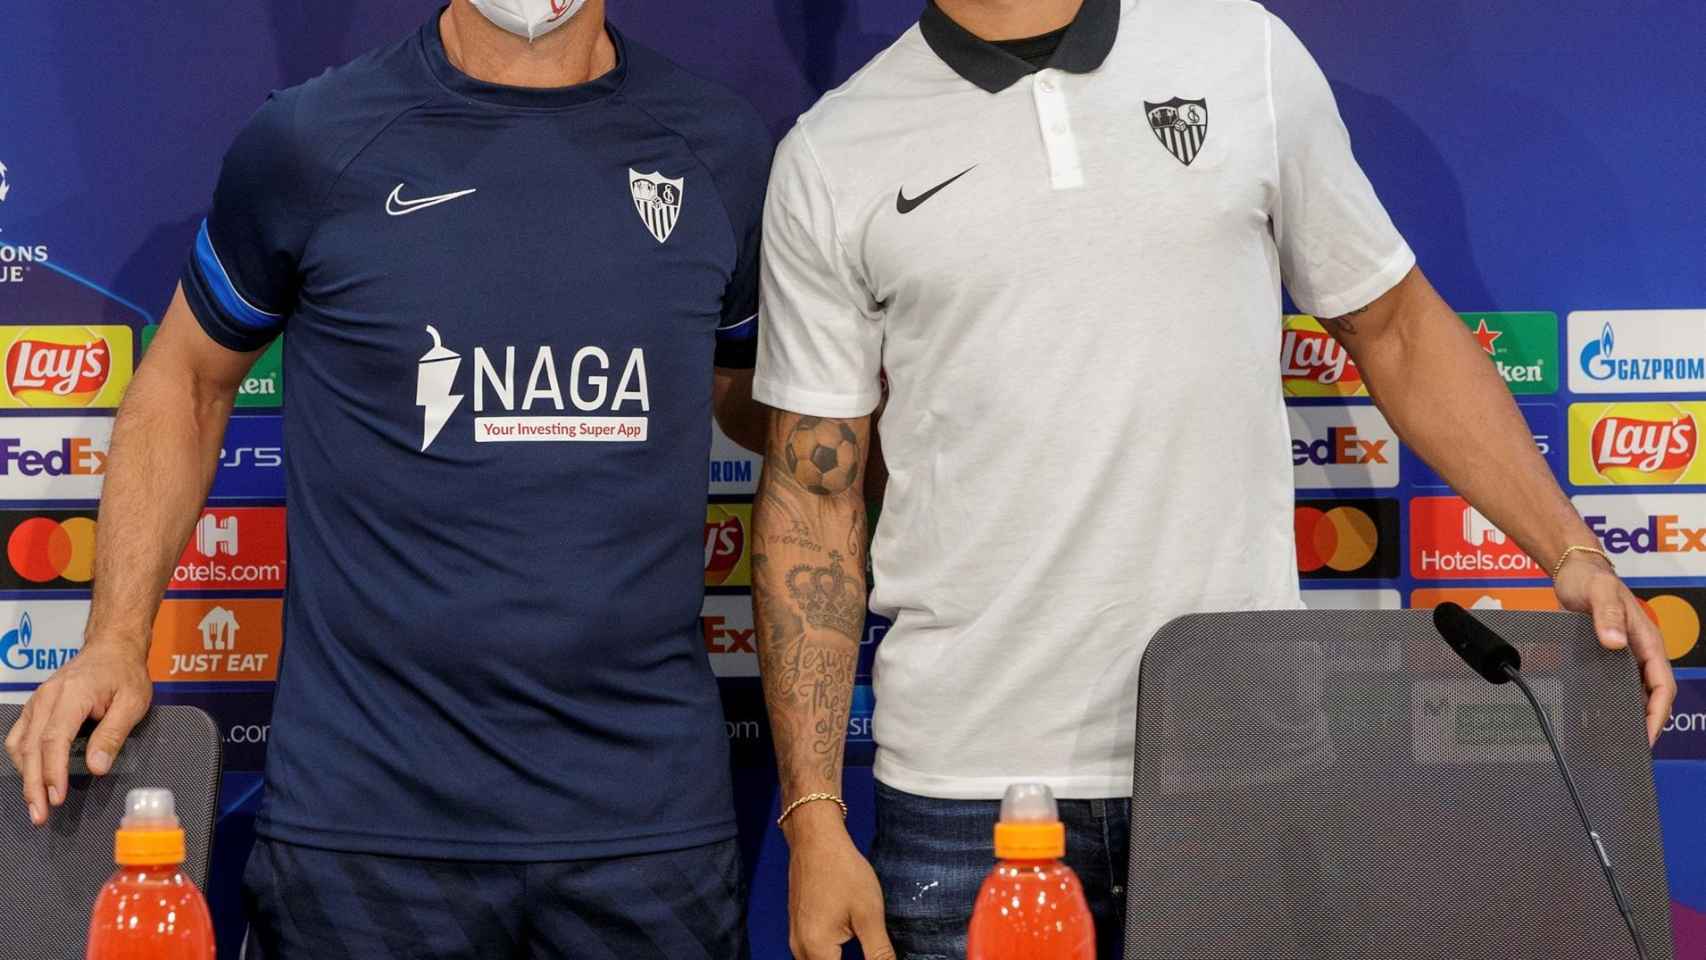 Julen Lopetegui y Diego Carlos, en rueda de prensa de la Champions League